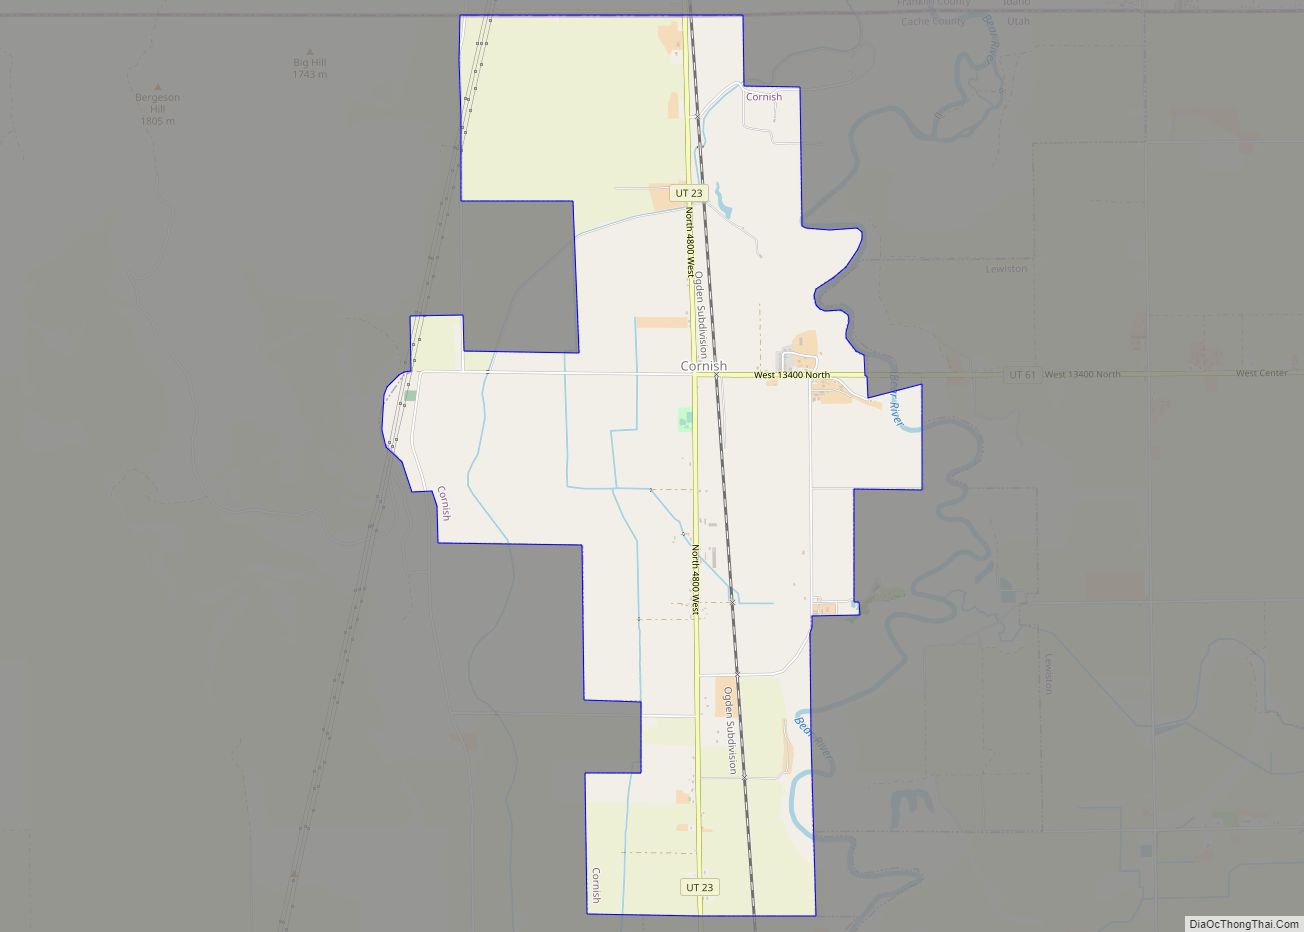 Map of Cornish town, Utah